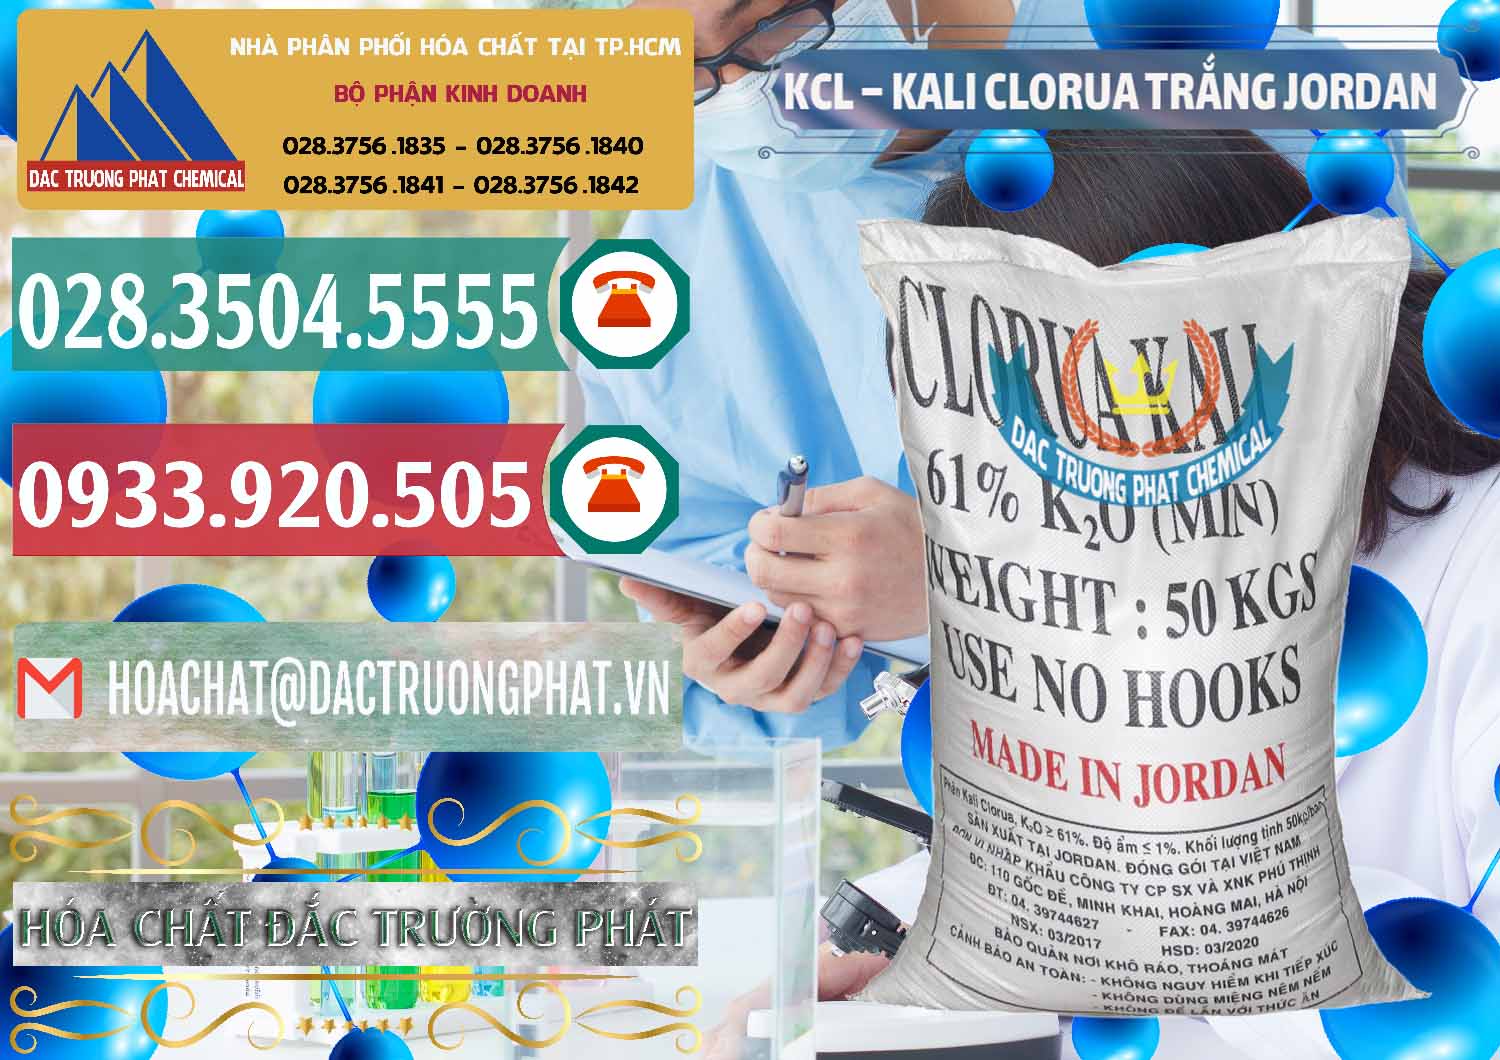 Cty chuyên kinh doanh ( bán ) KCL – Kali Clorua Trắng Jordan - 0088 - Nơi chuyên phân phối và nhập khẩu hóa chất tại TP.HCM - muabanhoachat.vn